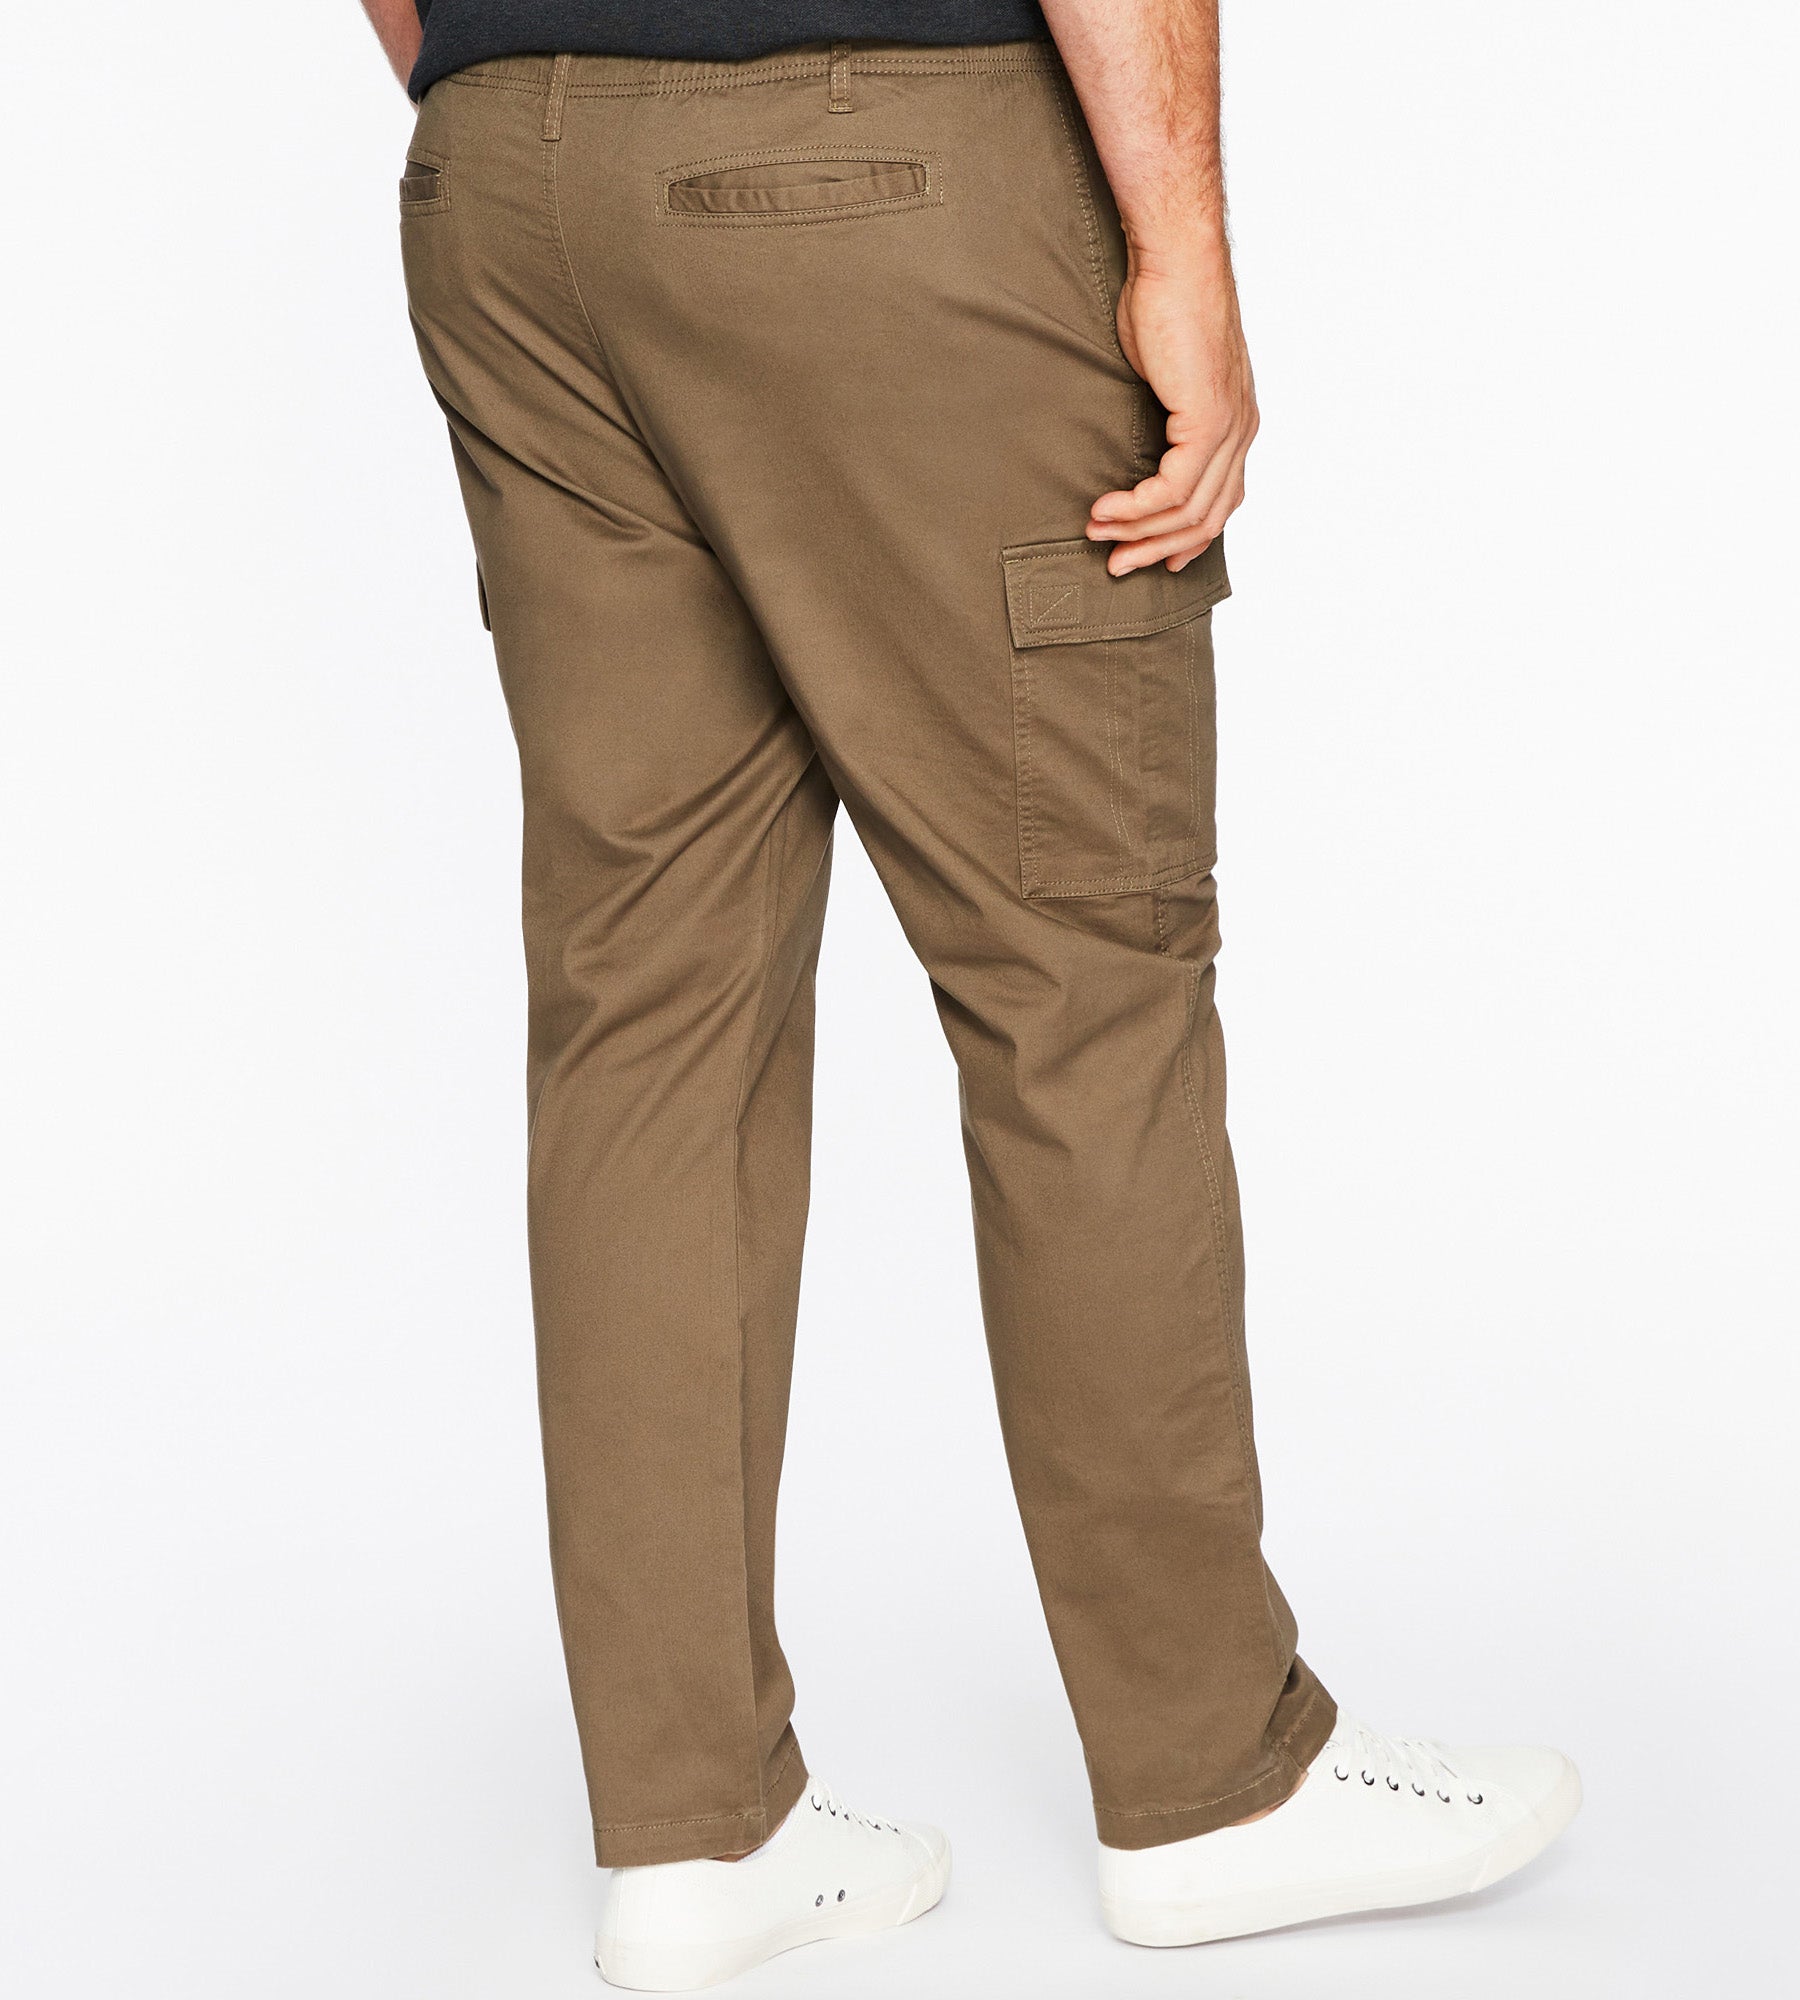 Guide Series Convertible Pants Men's Size L/32 Gray $28.75 Guide Series  Convertible Pants Men's Size L/32 Gray (aa12/LP) Features: •